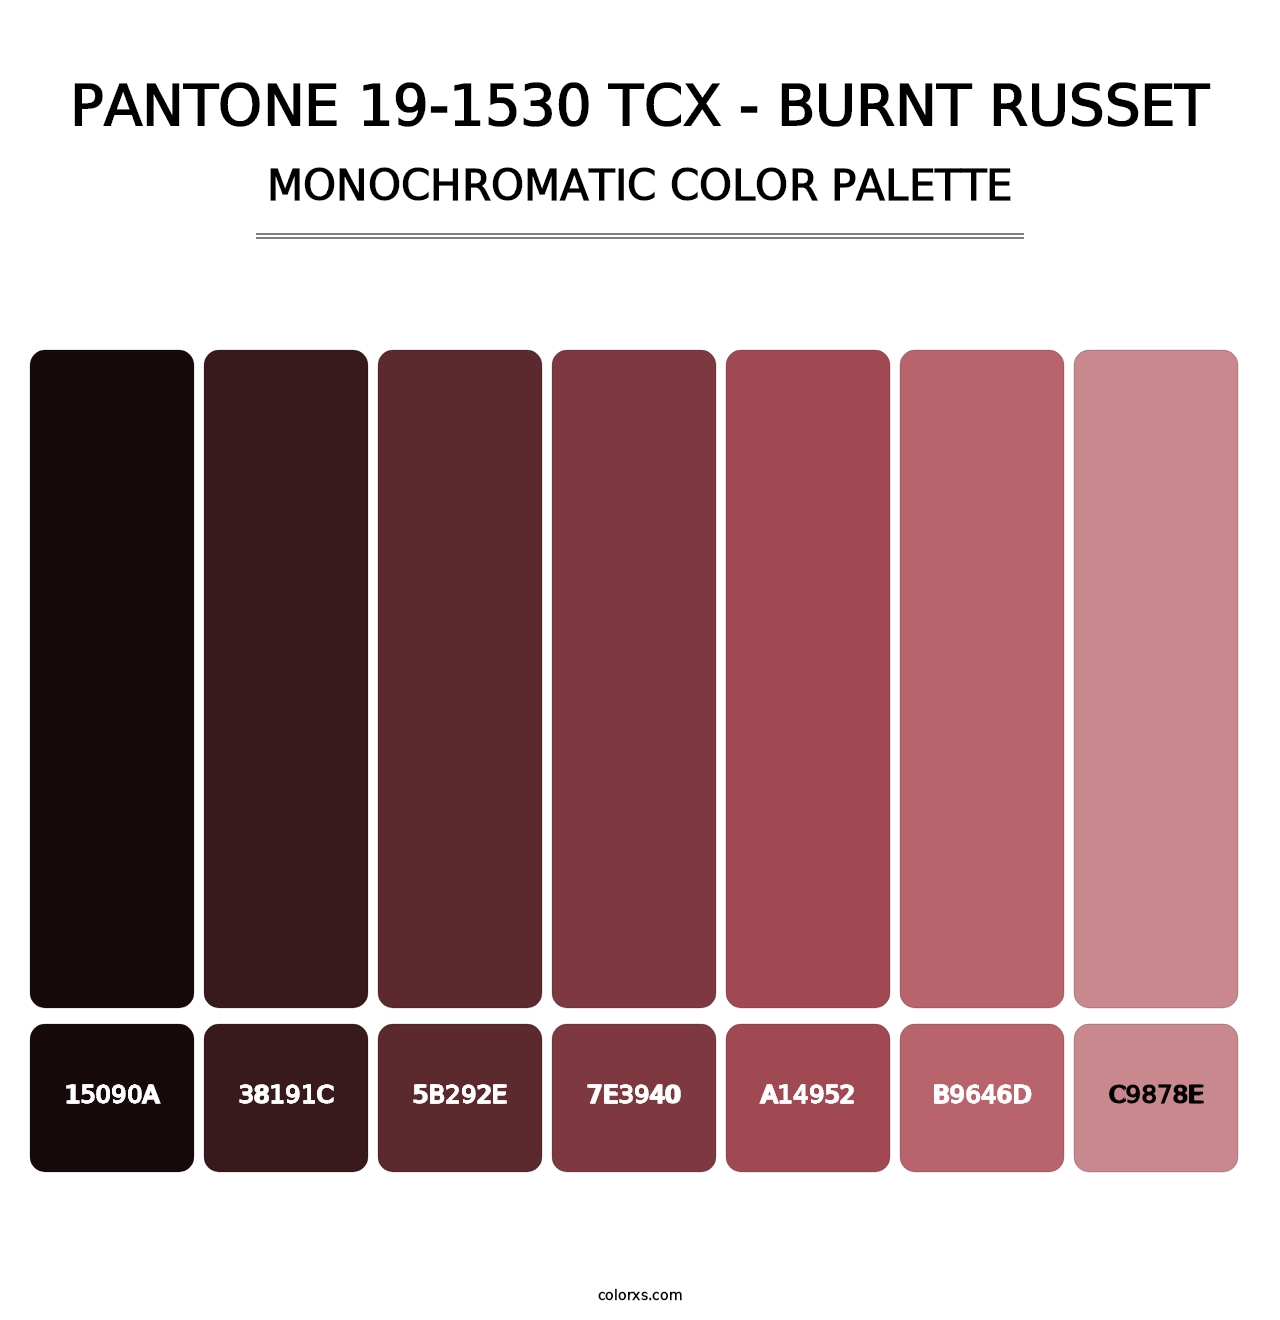 PANTONE 19-1530 TCX - Burnt Russet - Monochromatic Color Palette